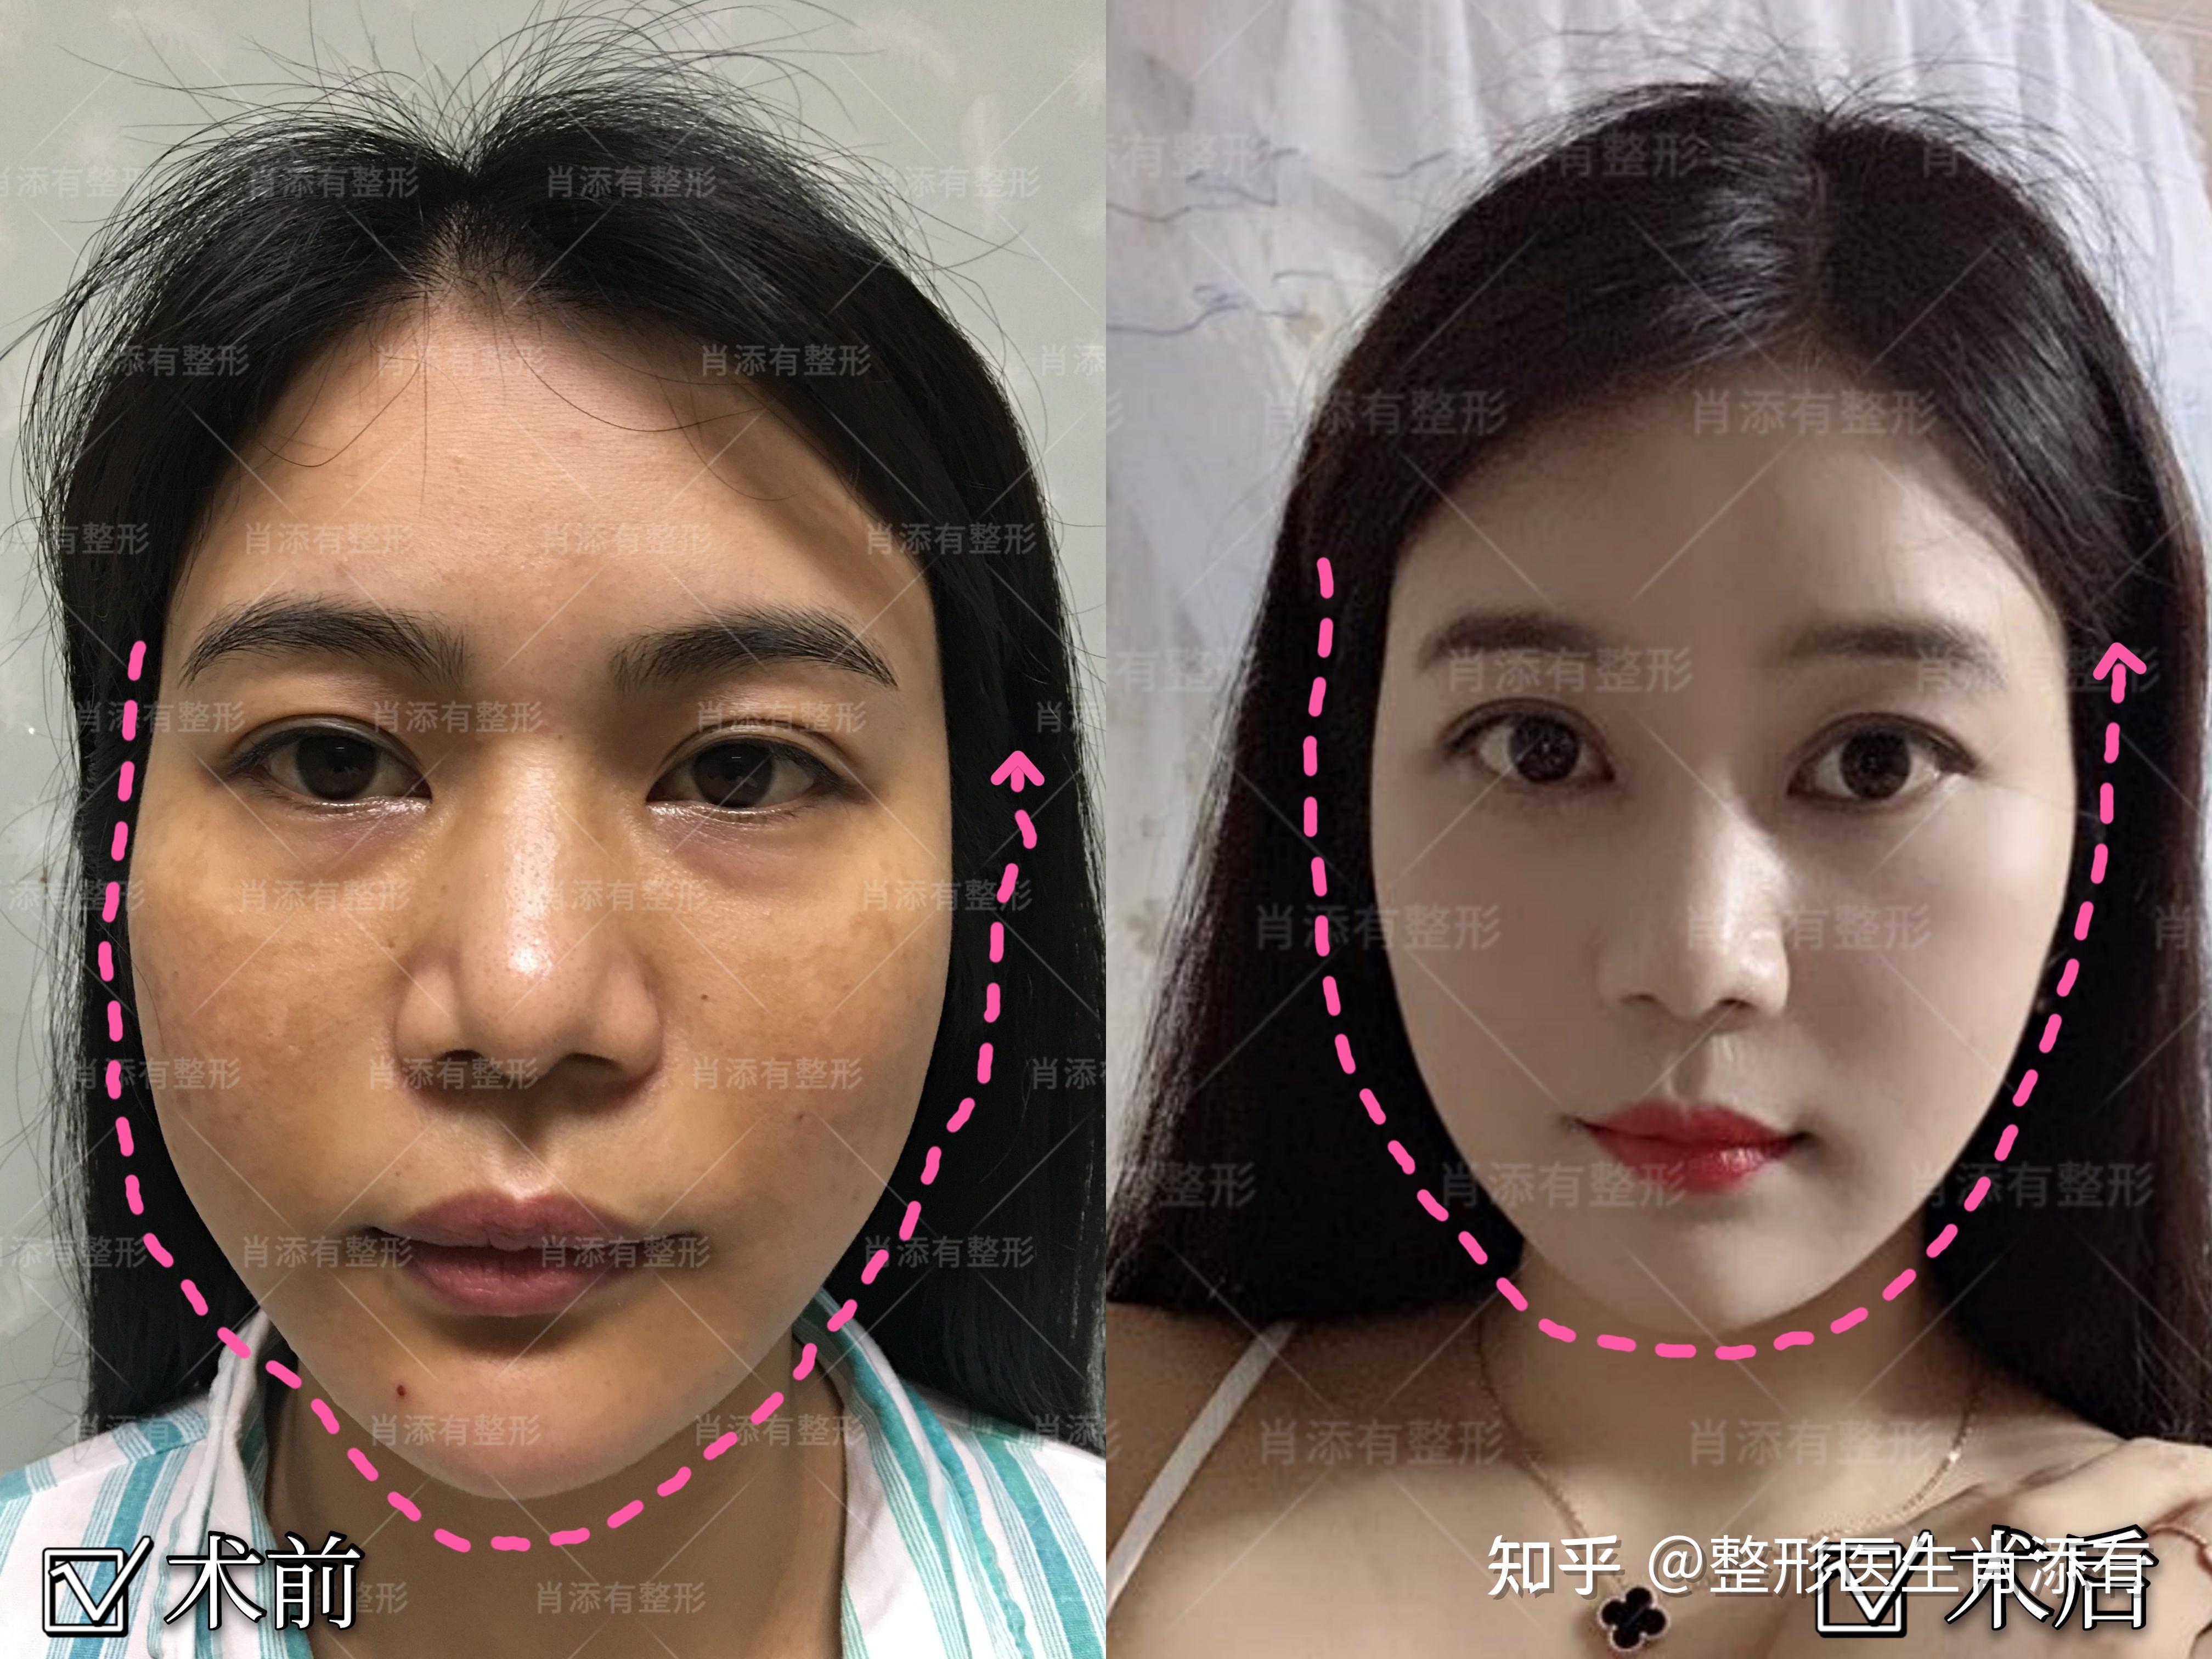 女孩33岁,面部有松弛下垂,通过面部埋线提升手术前术后对比图片. - 哔哩哔哩